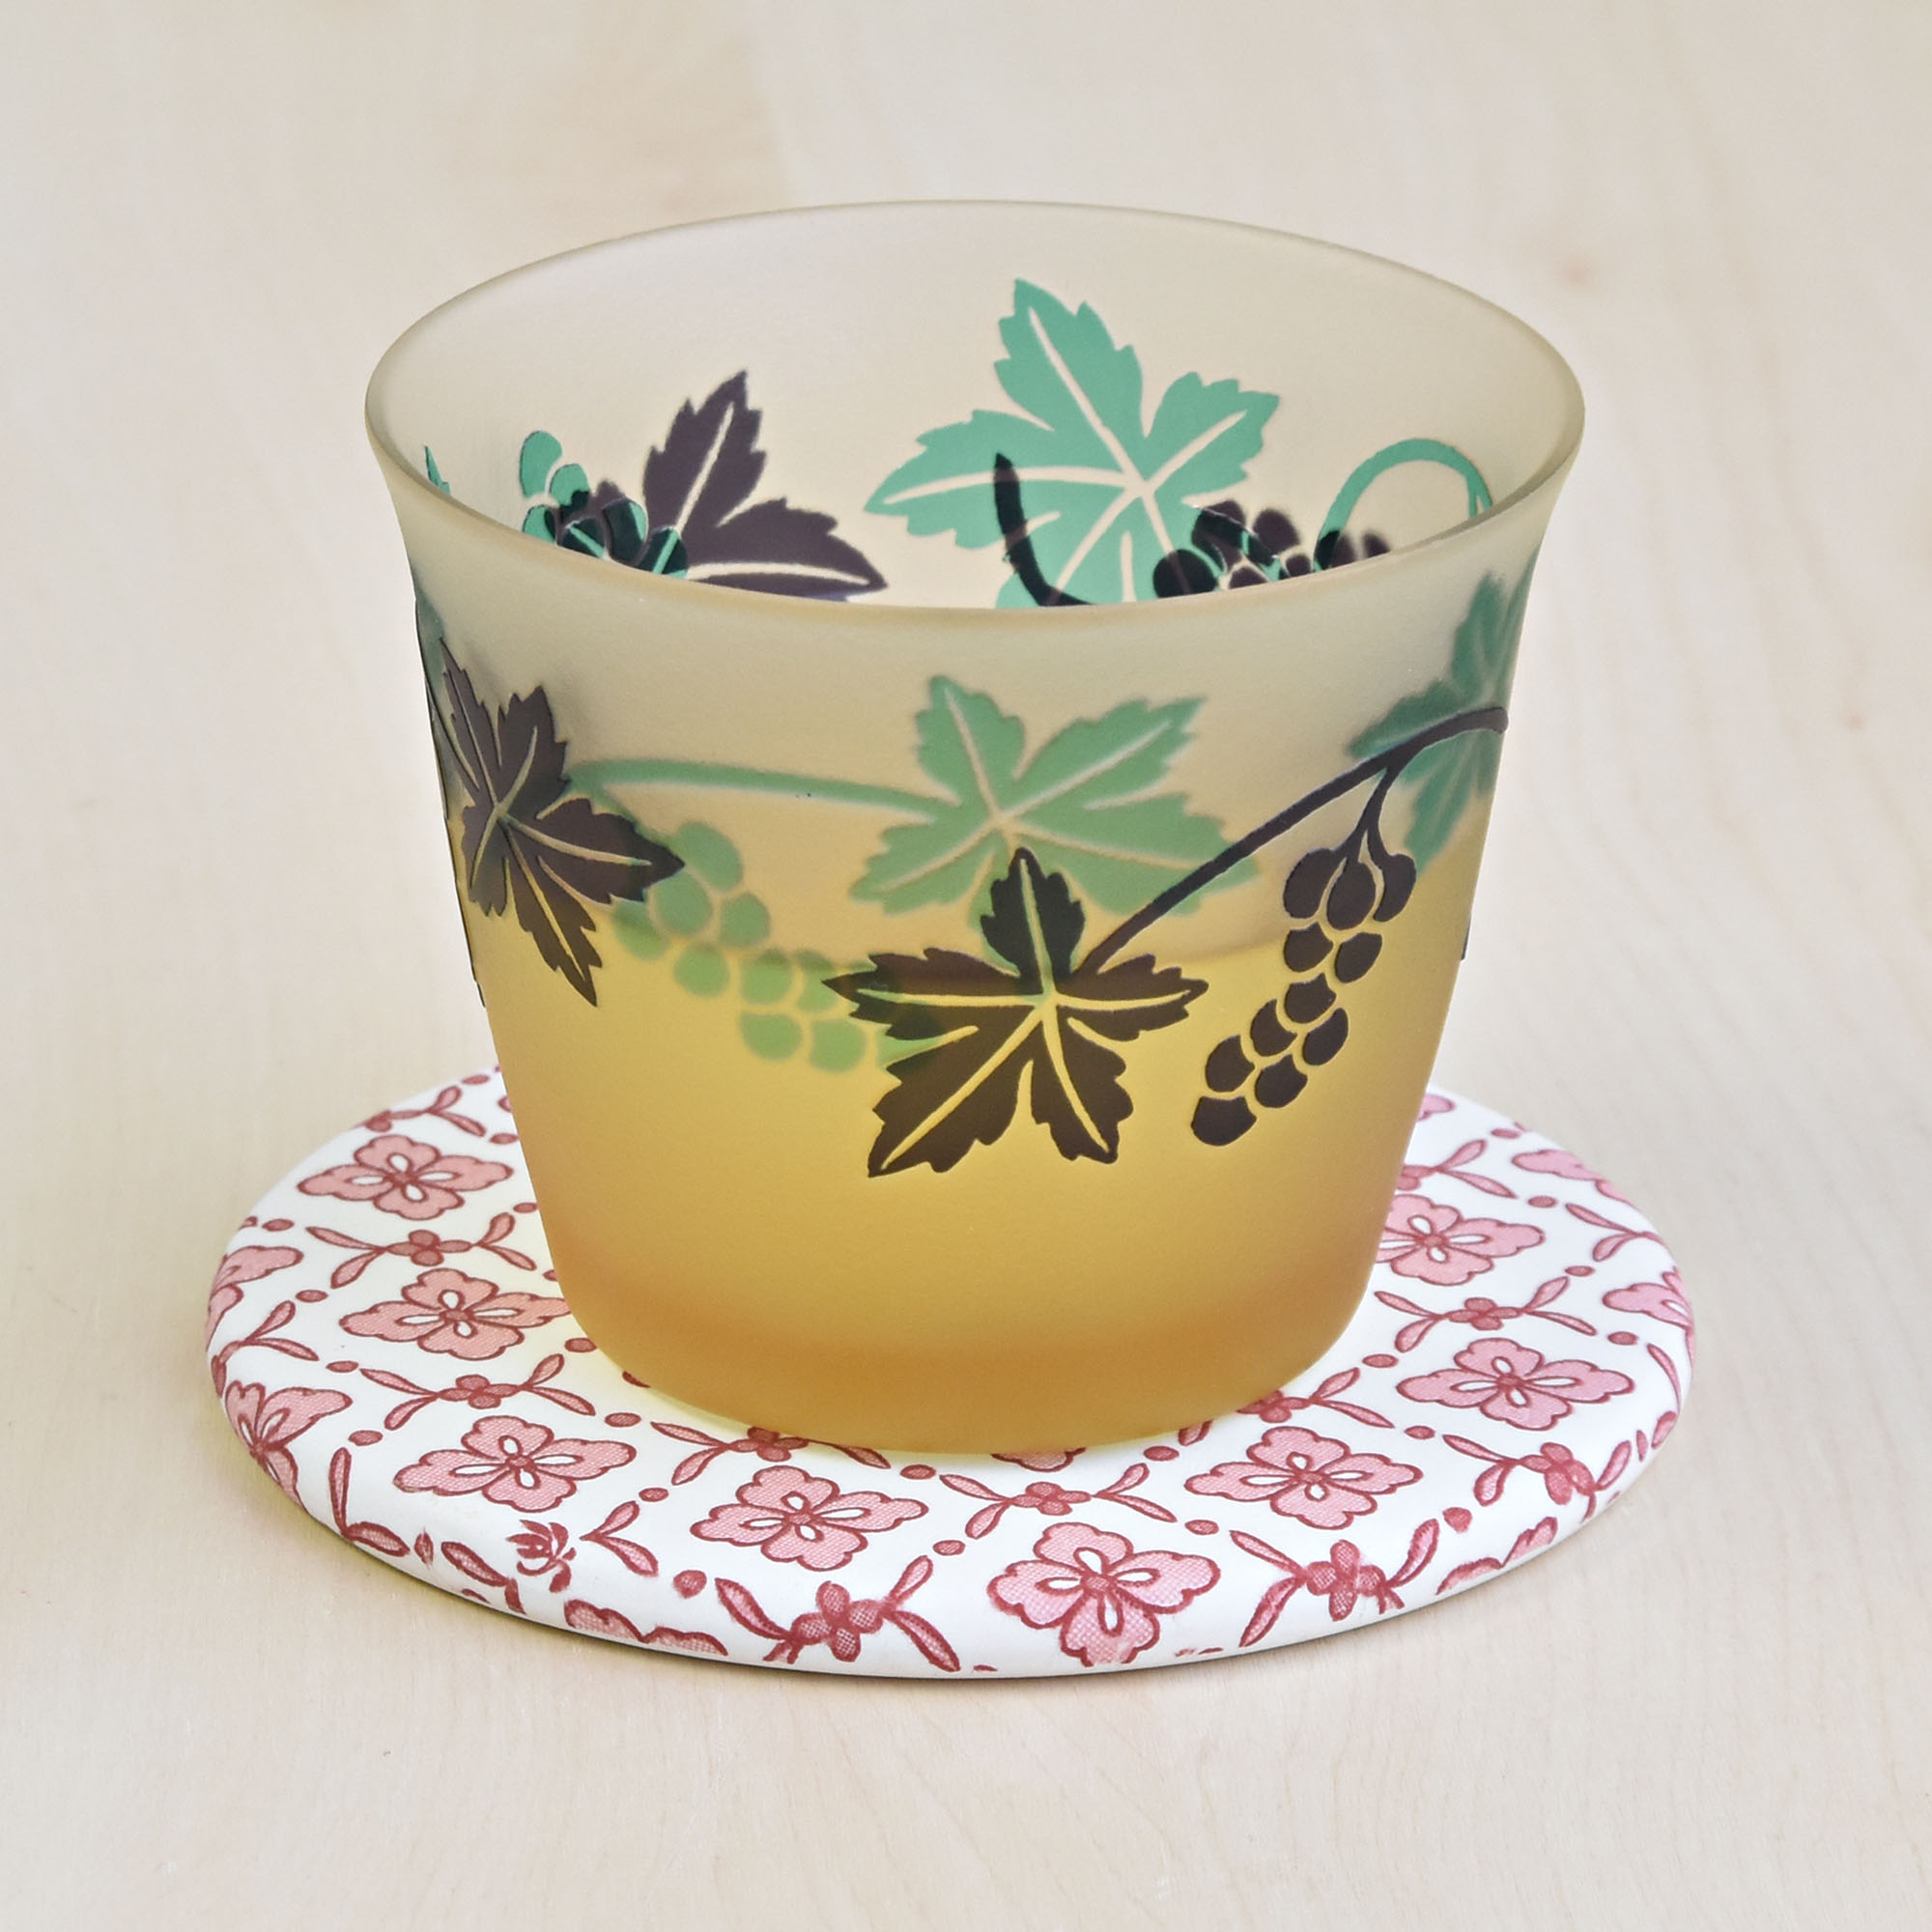 別売りの春蘭・冷茶碗5客セット【商品コード1320-OCK】に合わせて使ってみました。夏のおもてなしにいいですね。